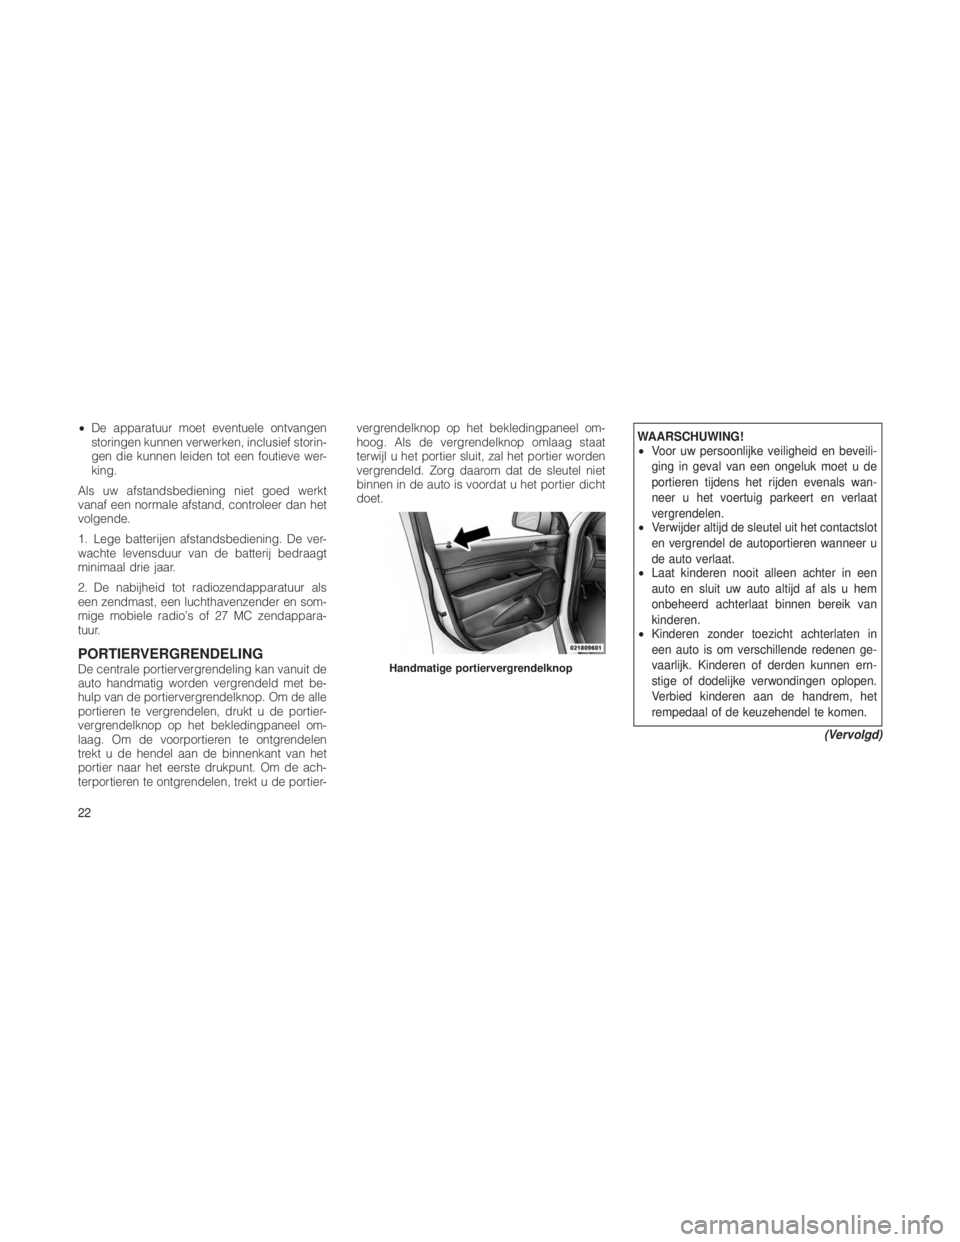 JEEP GRAND CHEROKEE 2012  Instructieboek (in Dutch) •De apparatuur moet eventuele ontvangen
storingen kunnen verwerken, inclusief storin-
gen die kunnen leiden tot een foutieve wer-
king.
Als uw afstandsbediening niet goed werkt
vanaf een normale afs